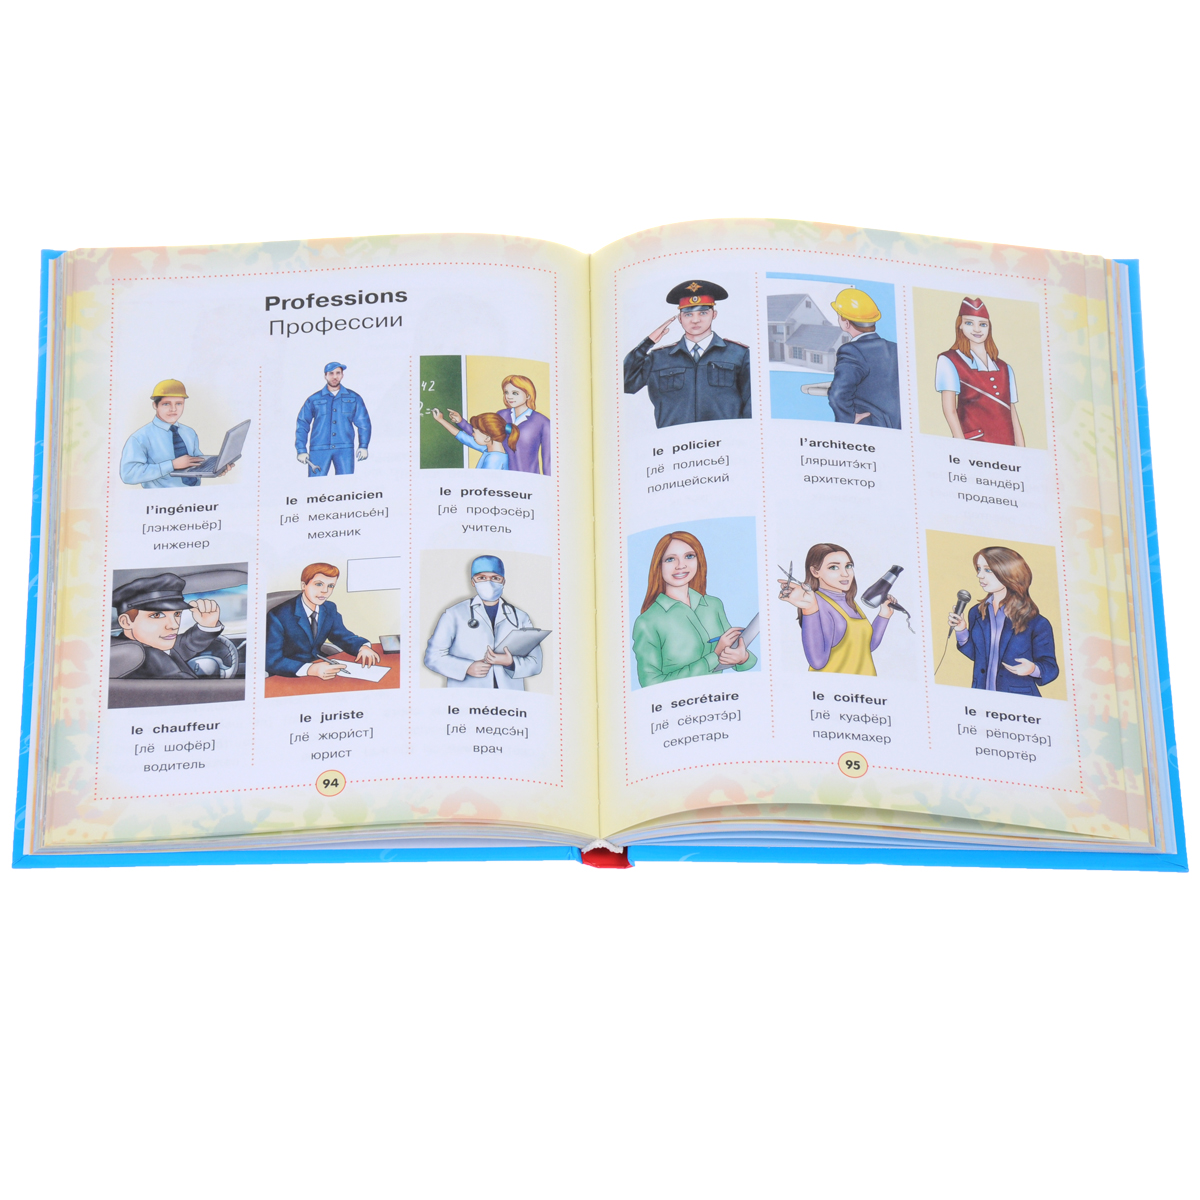 Французско-русский визуальный словарь для детей изменяется ласково заботясь